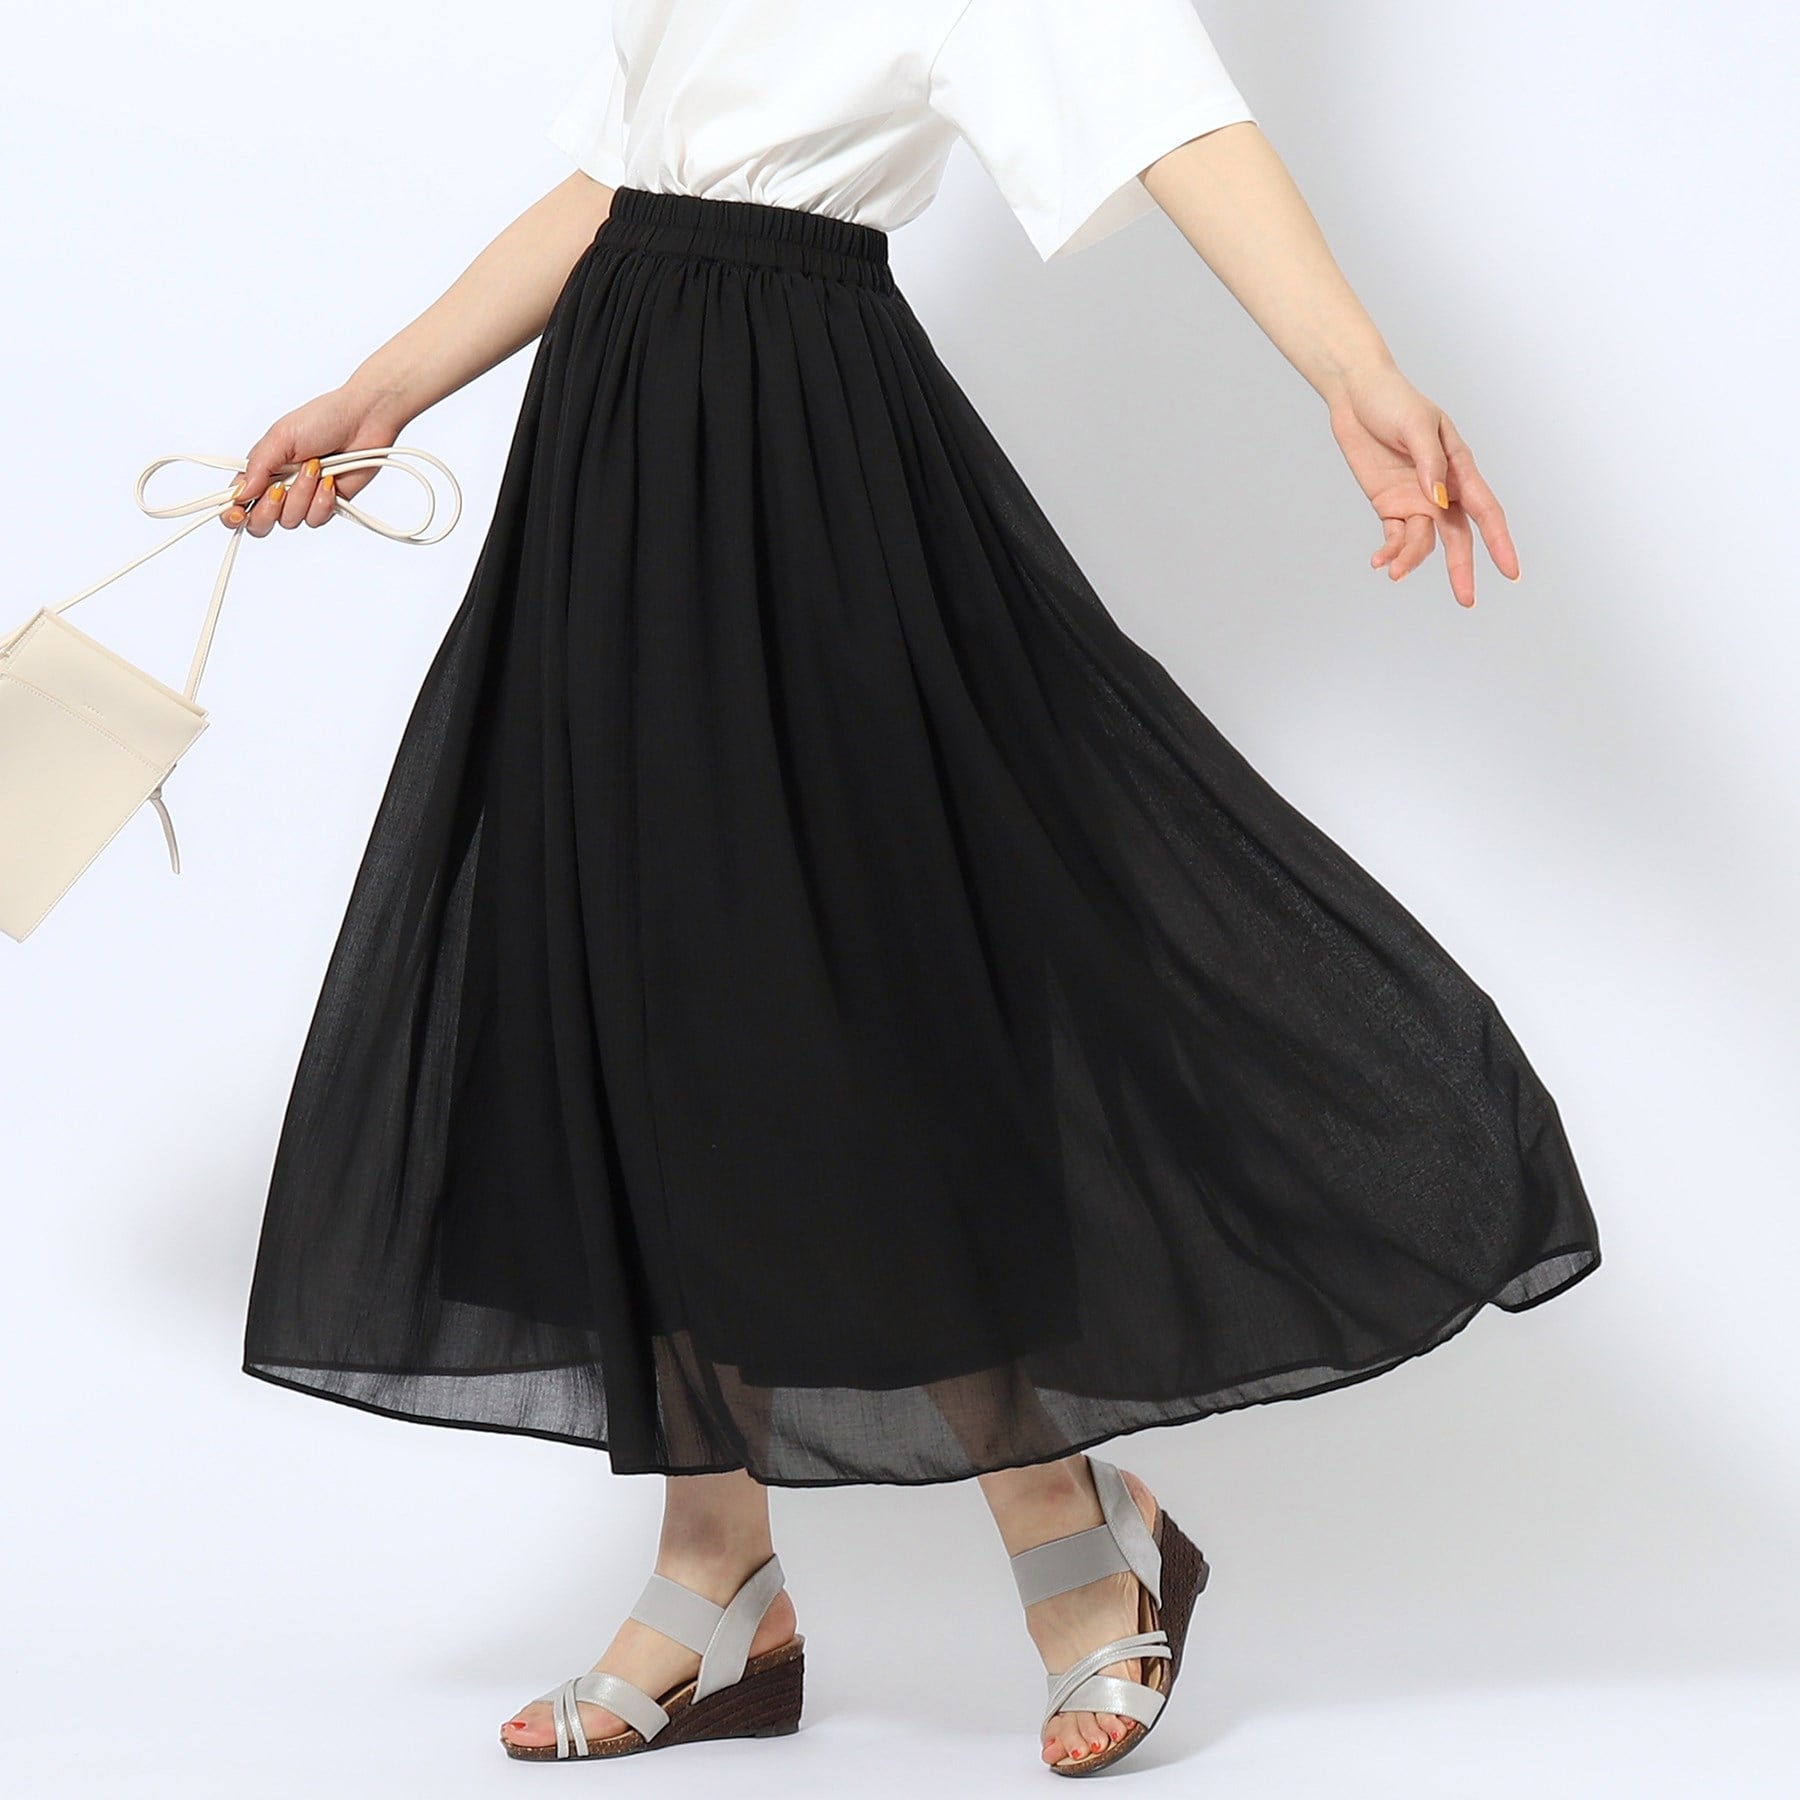 シューラルー(SHOO・LA・RUE)の【歩くたび揺れる】上品な透け感カラーボイルスカート ブラック(019)